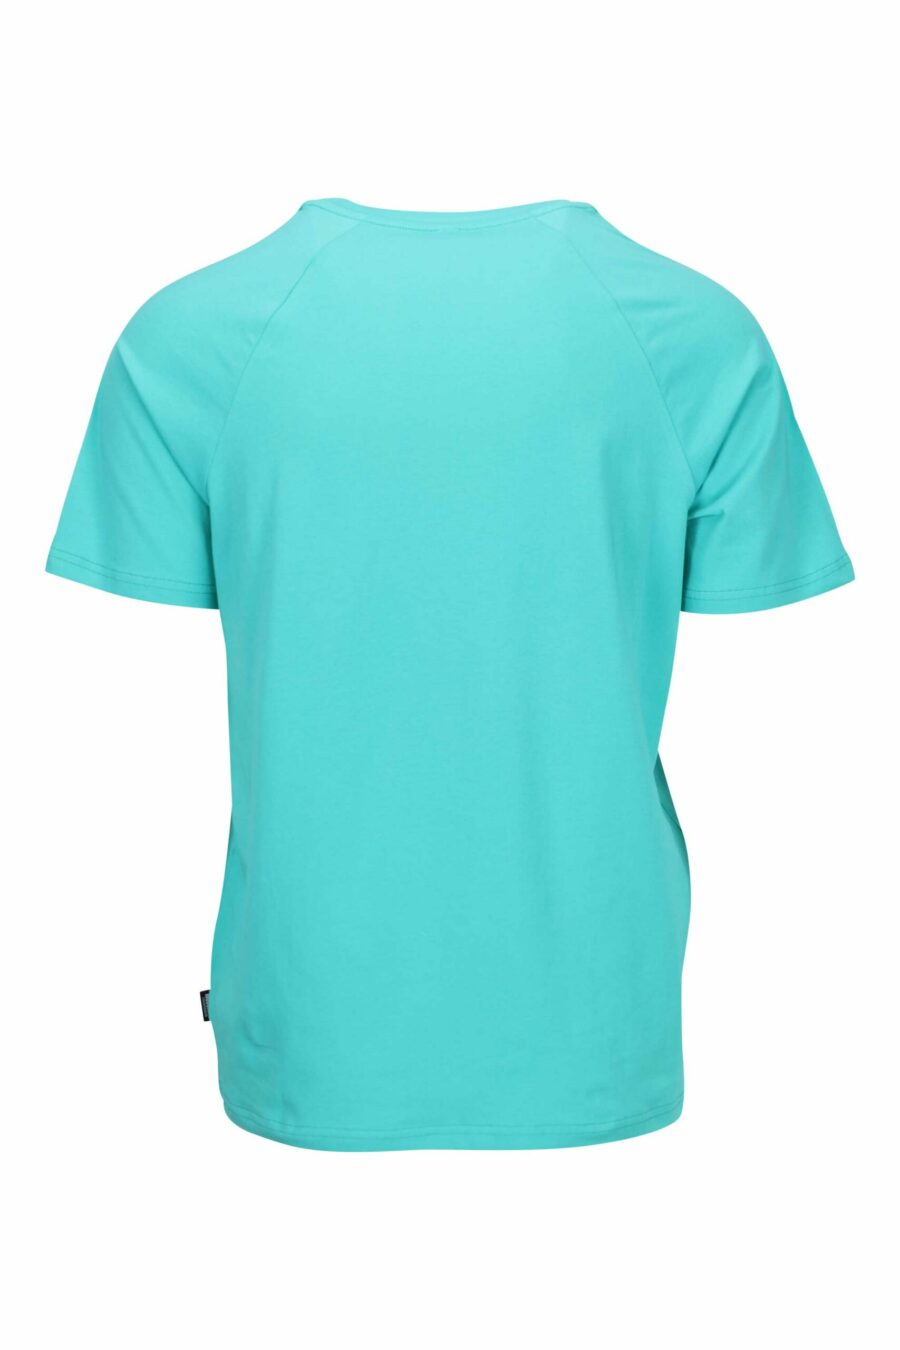 Camiseta azul aguamarina con logo oso "underbear" en cinta hombros - 667113602400 1 scaled